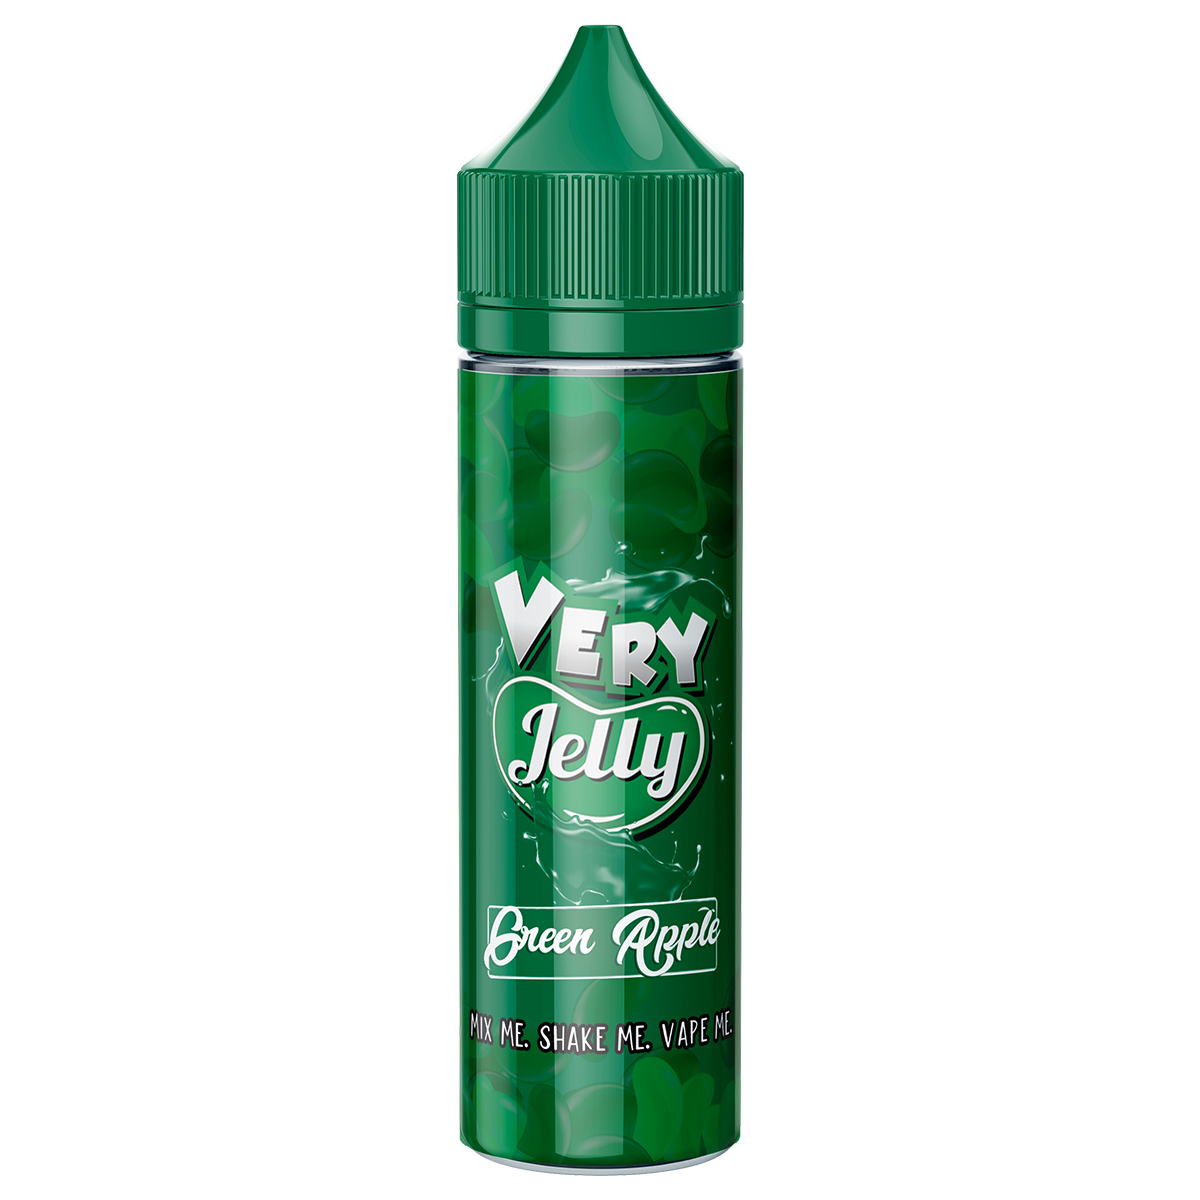 Very Jelly Green Apple 60ml Shortfill ELiquid Vapura